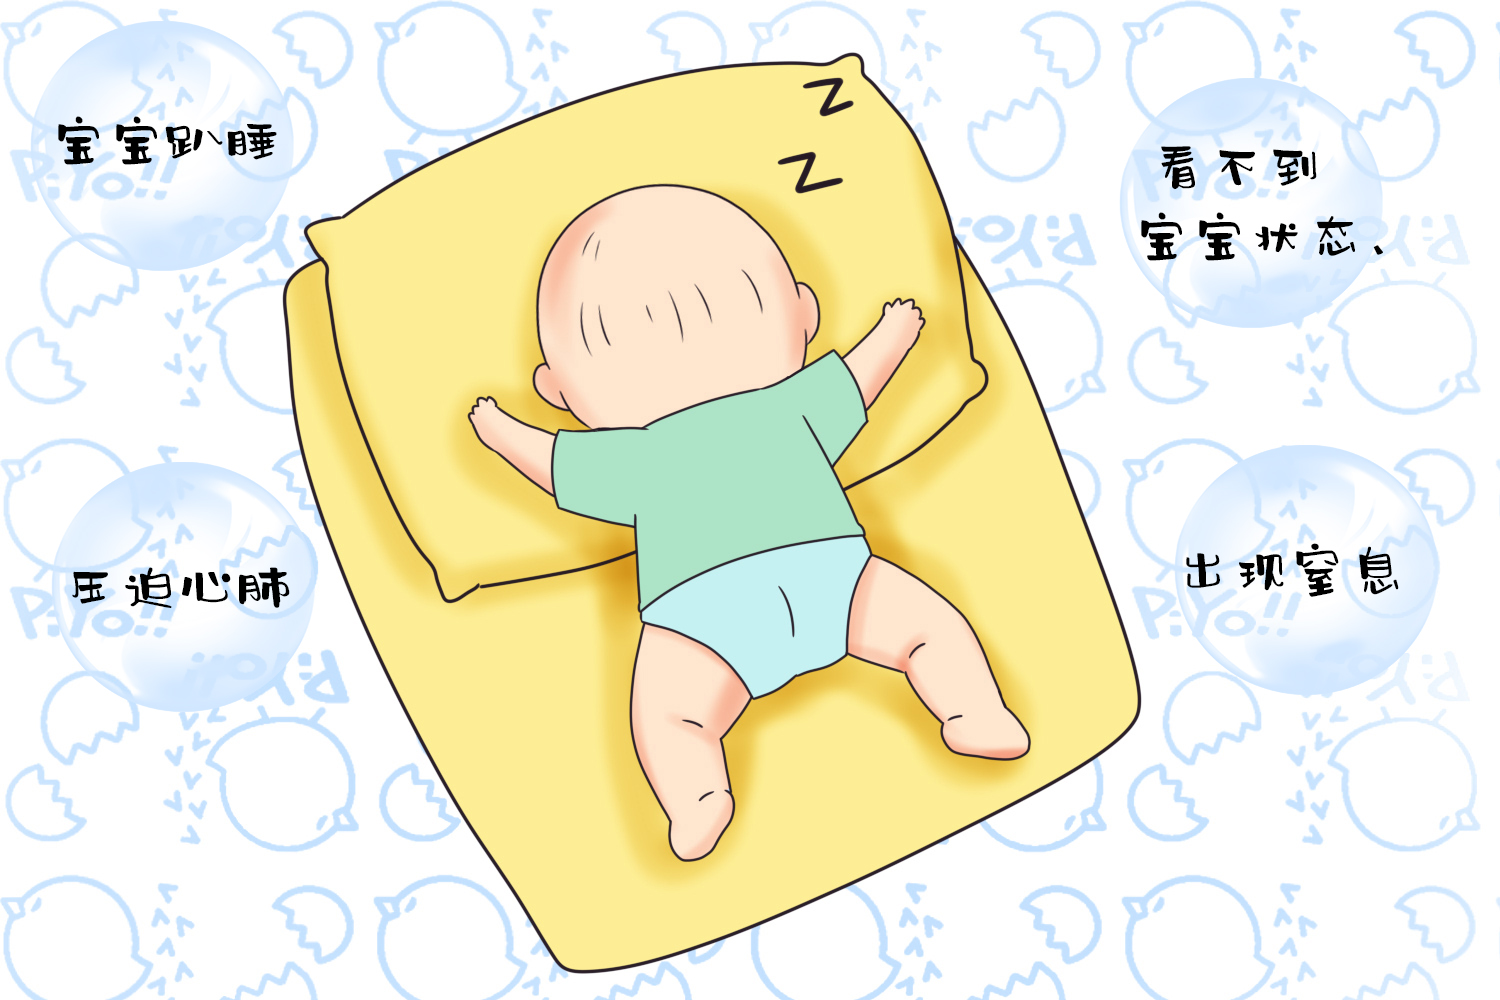 婴儿睡姿常见睡姿:仰卧,俯卧,侧卧各有利弊,怎么睡更健康?